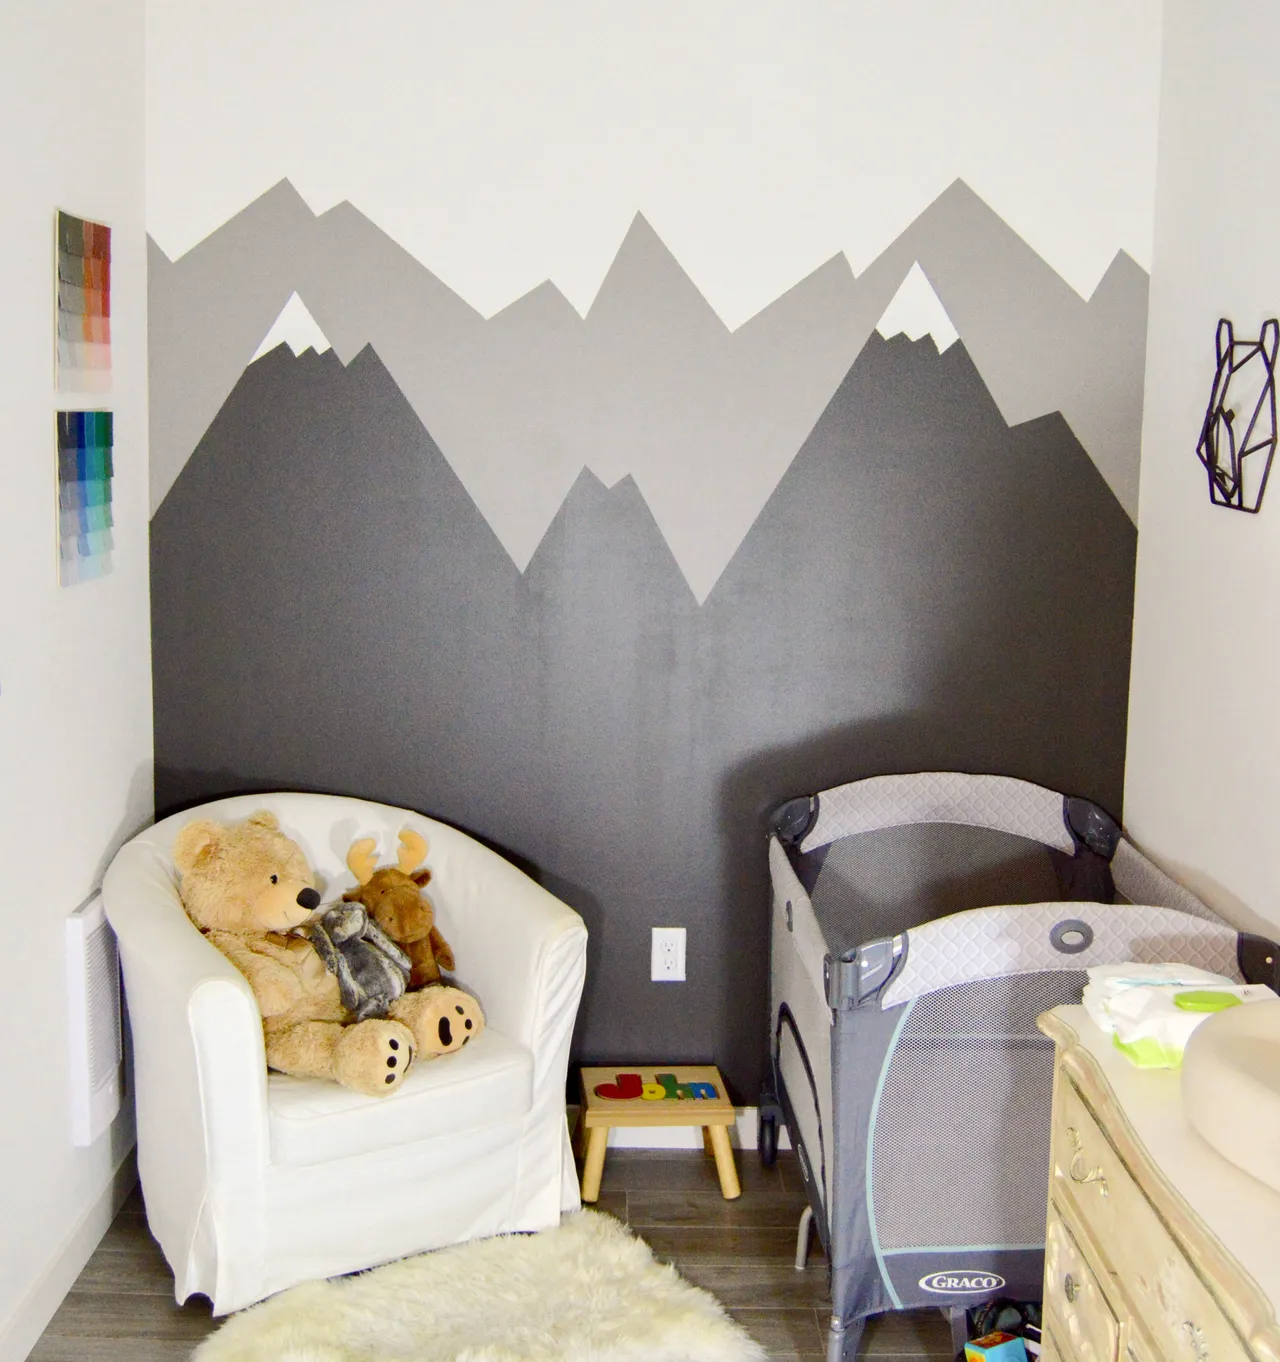 Mẫu tranh giành vẽ tường đơn giản và giản dị mang lại buồng nghỉ của trẻ con sơ sinh